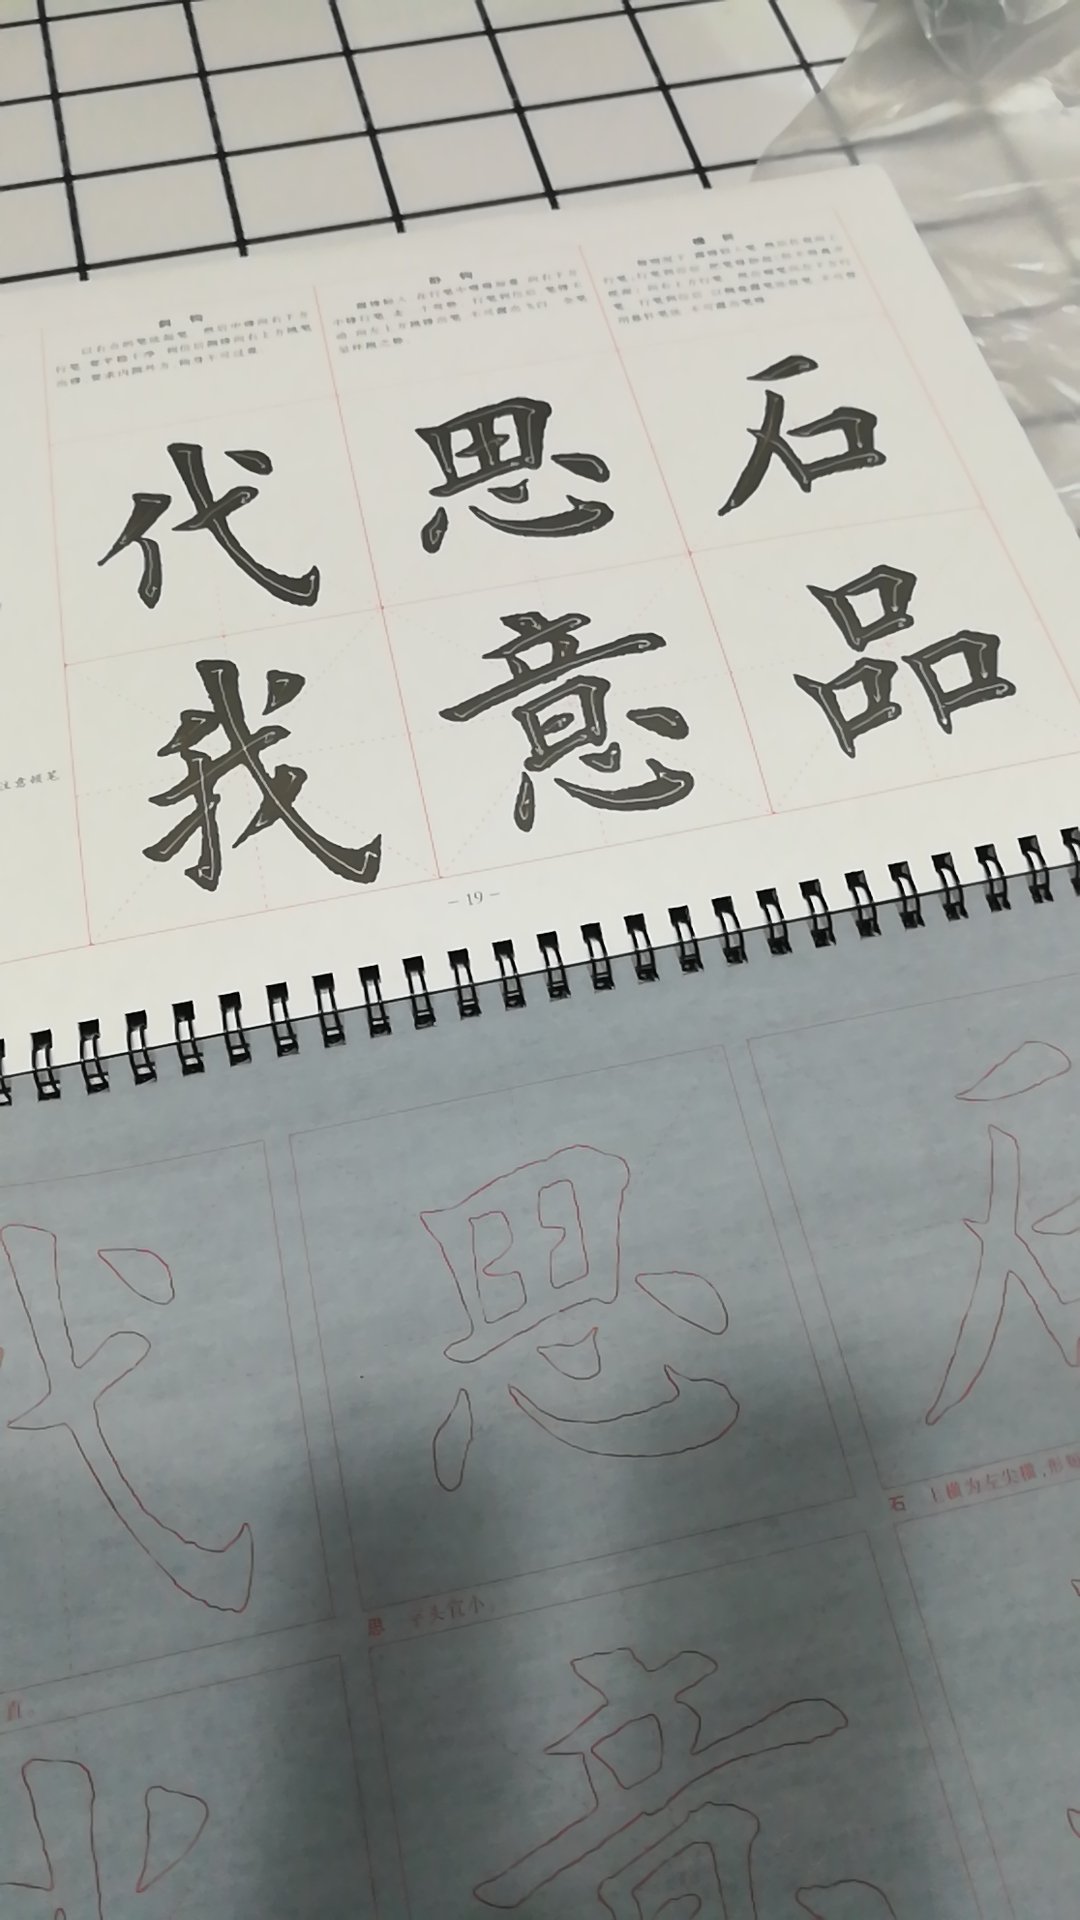 用清水就可以写，方便，田英章老师应该是临欧体的，点，横，撇，捺，折笔画的写法，配了些例字，字体结构中正秀美，规矩法度，小朋友大人都可以写，非常好